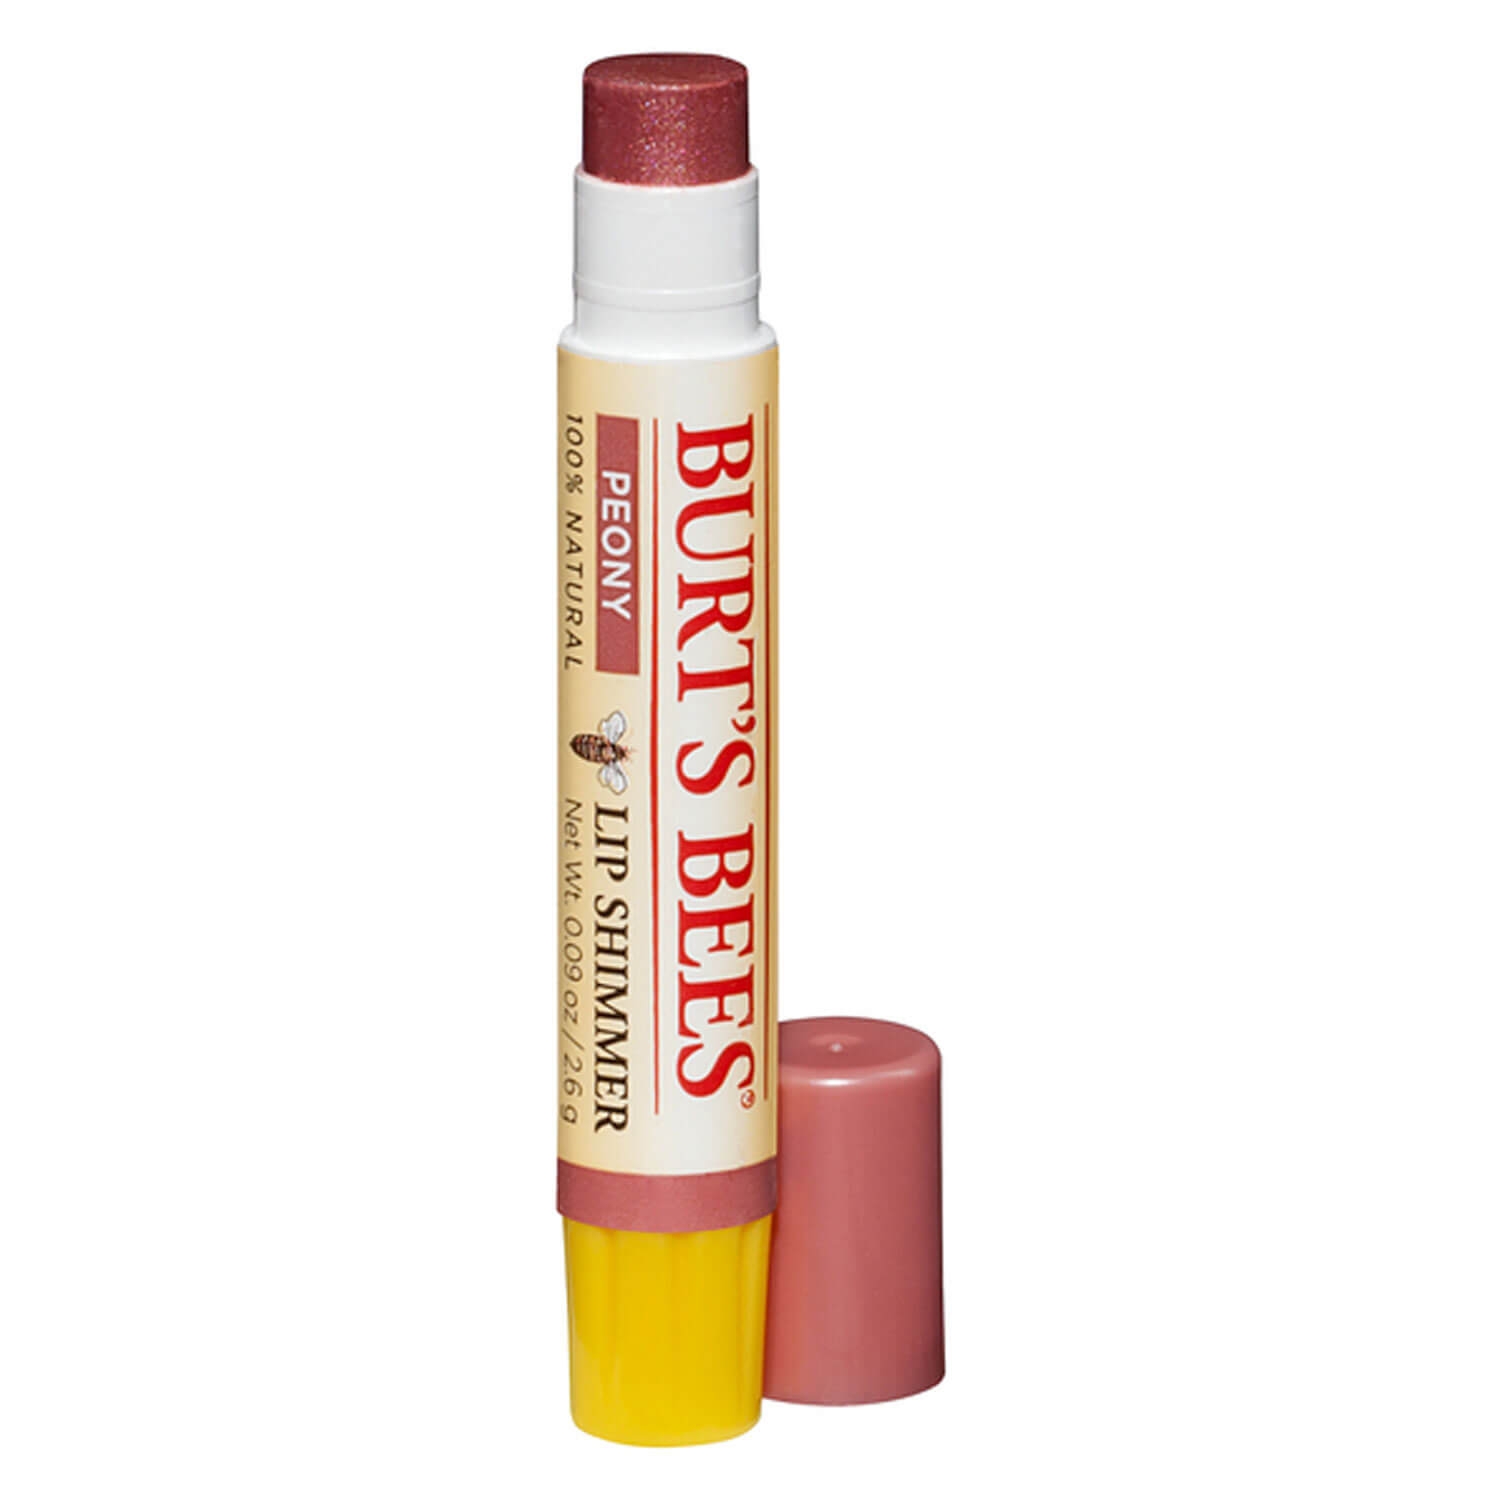 Produktbild von Burt's Bees - Lip Shimmer Peony